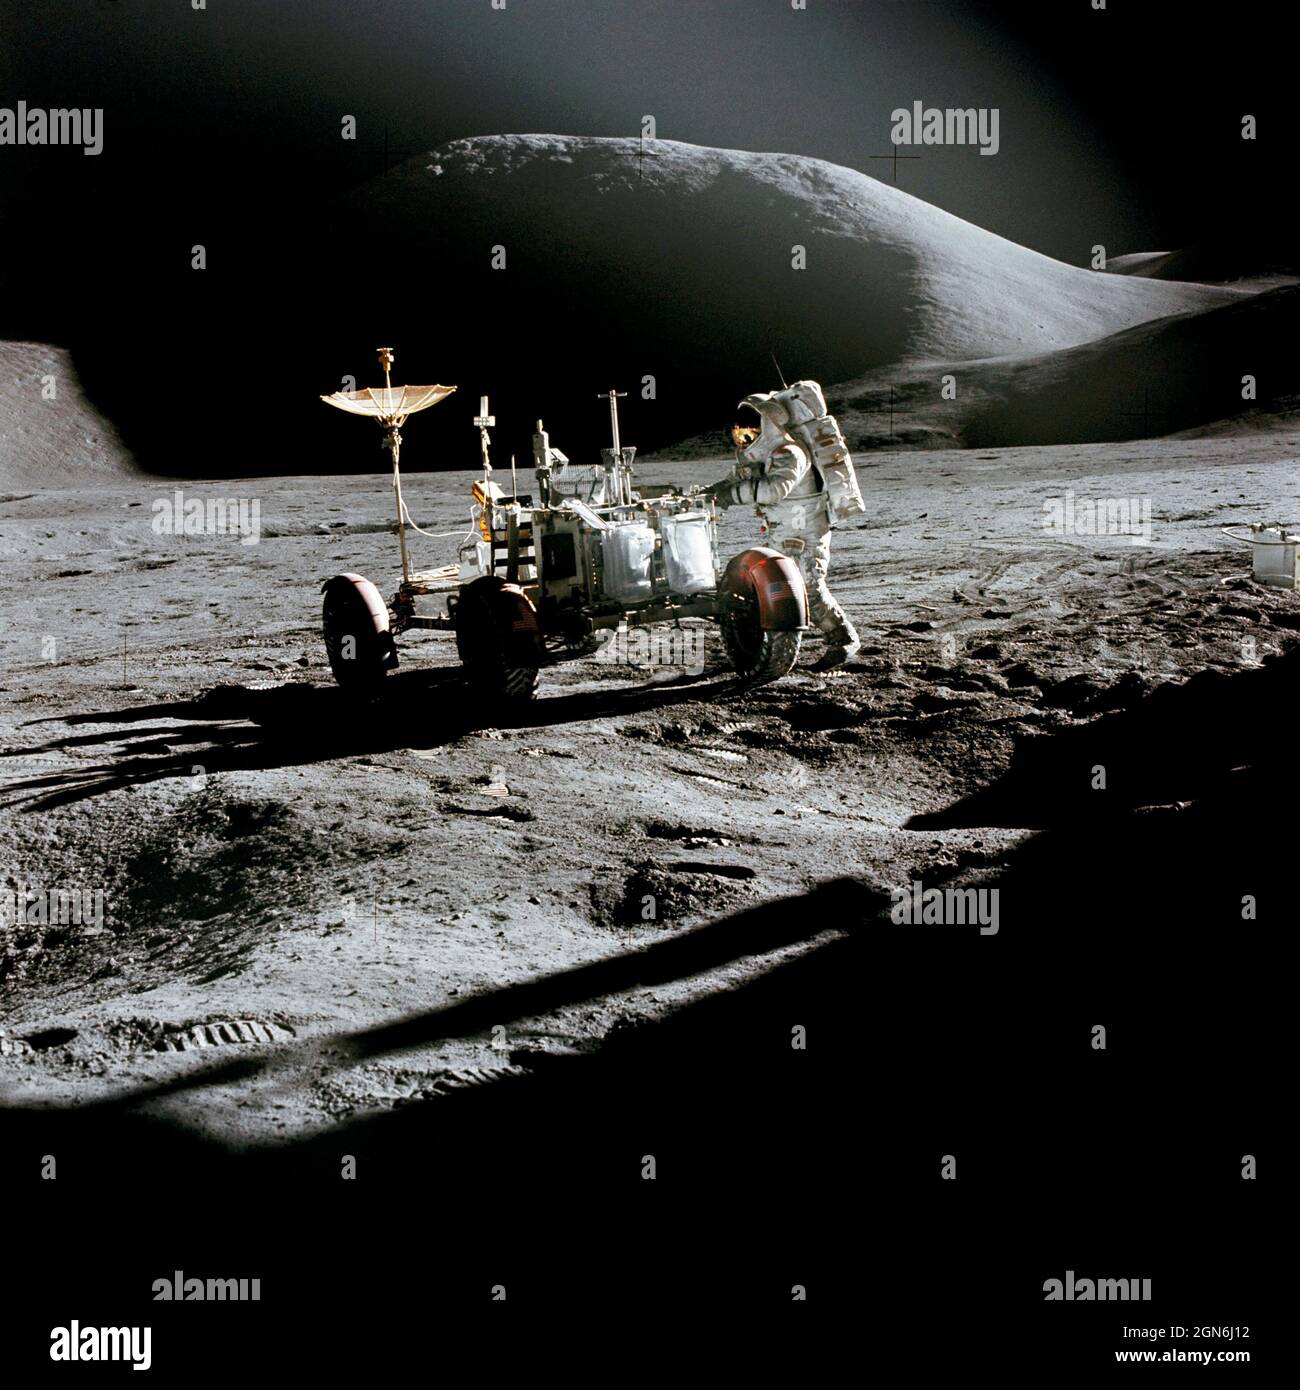 (31. Juli 1971) --- Astronaut James B. Irwin, Mondmodulpilot, arbeitet am Lunar Roving Vehicle während der ersten Apollo 15-Mondoberfläche-Extravehicular-Aktivität (EVA) am Hadley-Apennin-Landeplatz. Der Schatten der Mondlandefähre 'Falcon' steht im Vordergrund. Diese Ansicht ist nordöstlich, mit Mount Hadley im Hintergrund. Dieses Foto wurde von Astronaut David R. Scott, Kommandant, aufgenommen. Stockfoto